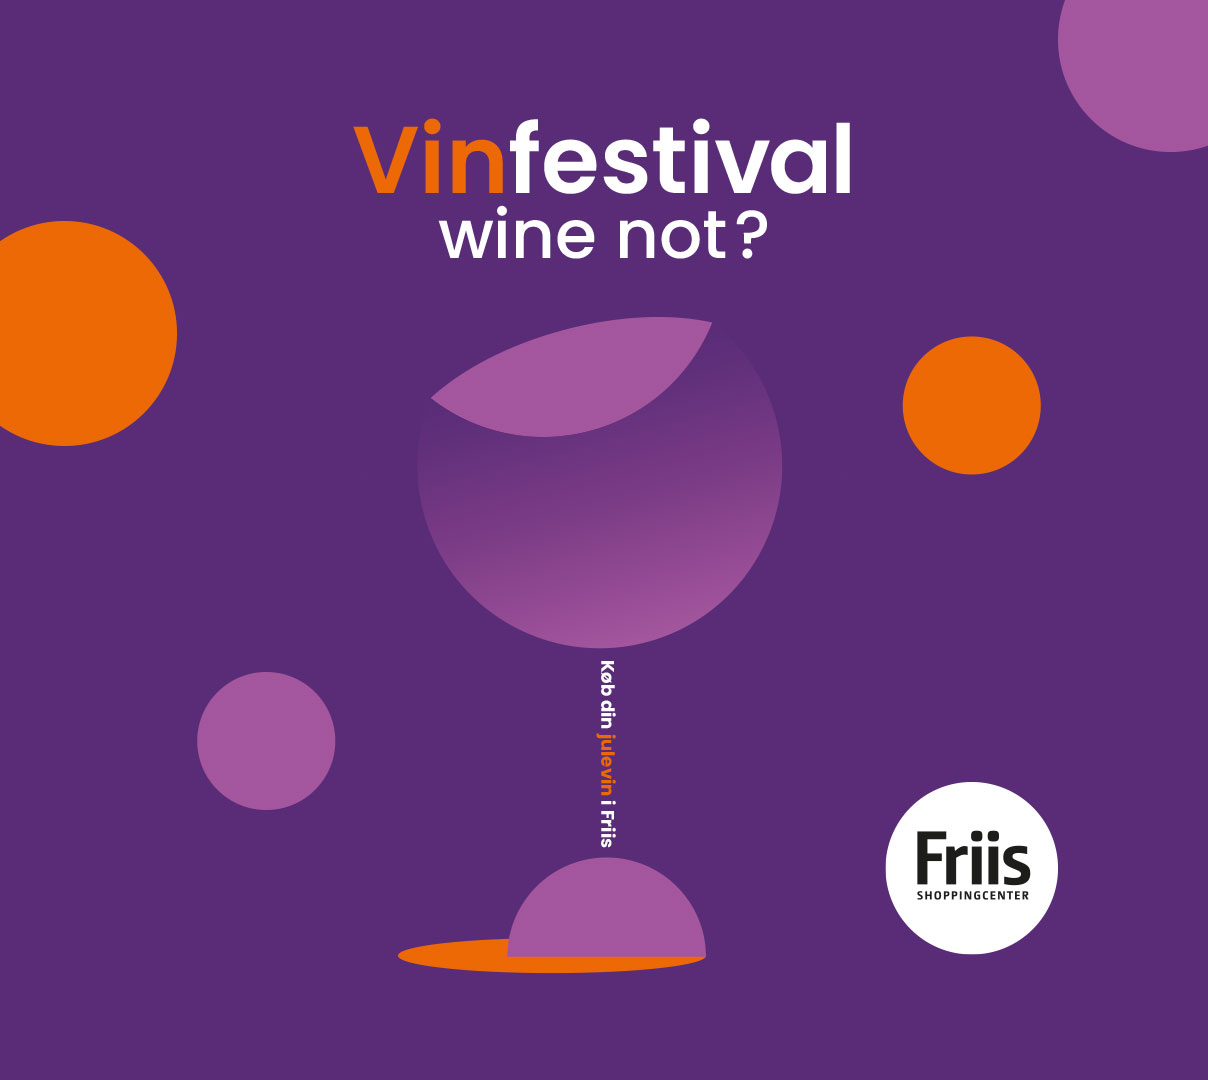 Vinforhandlere til vinfestival i Friis d. 18/11